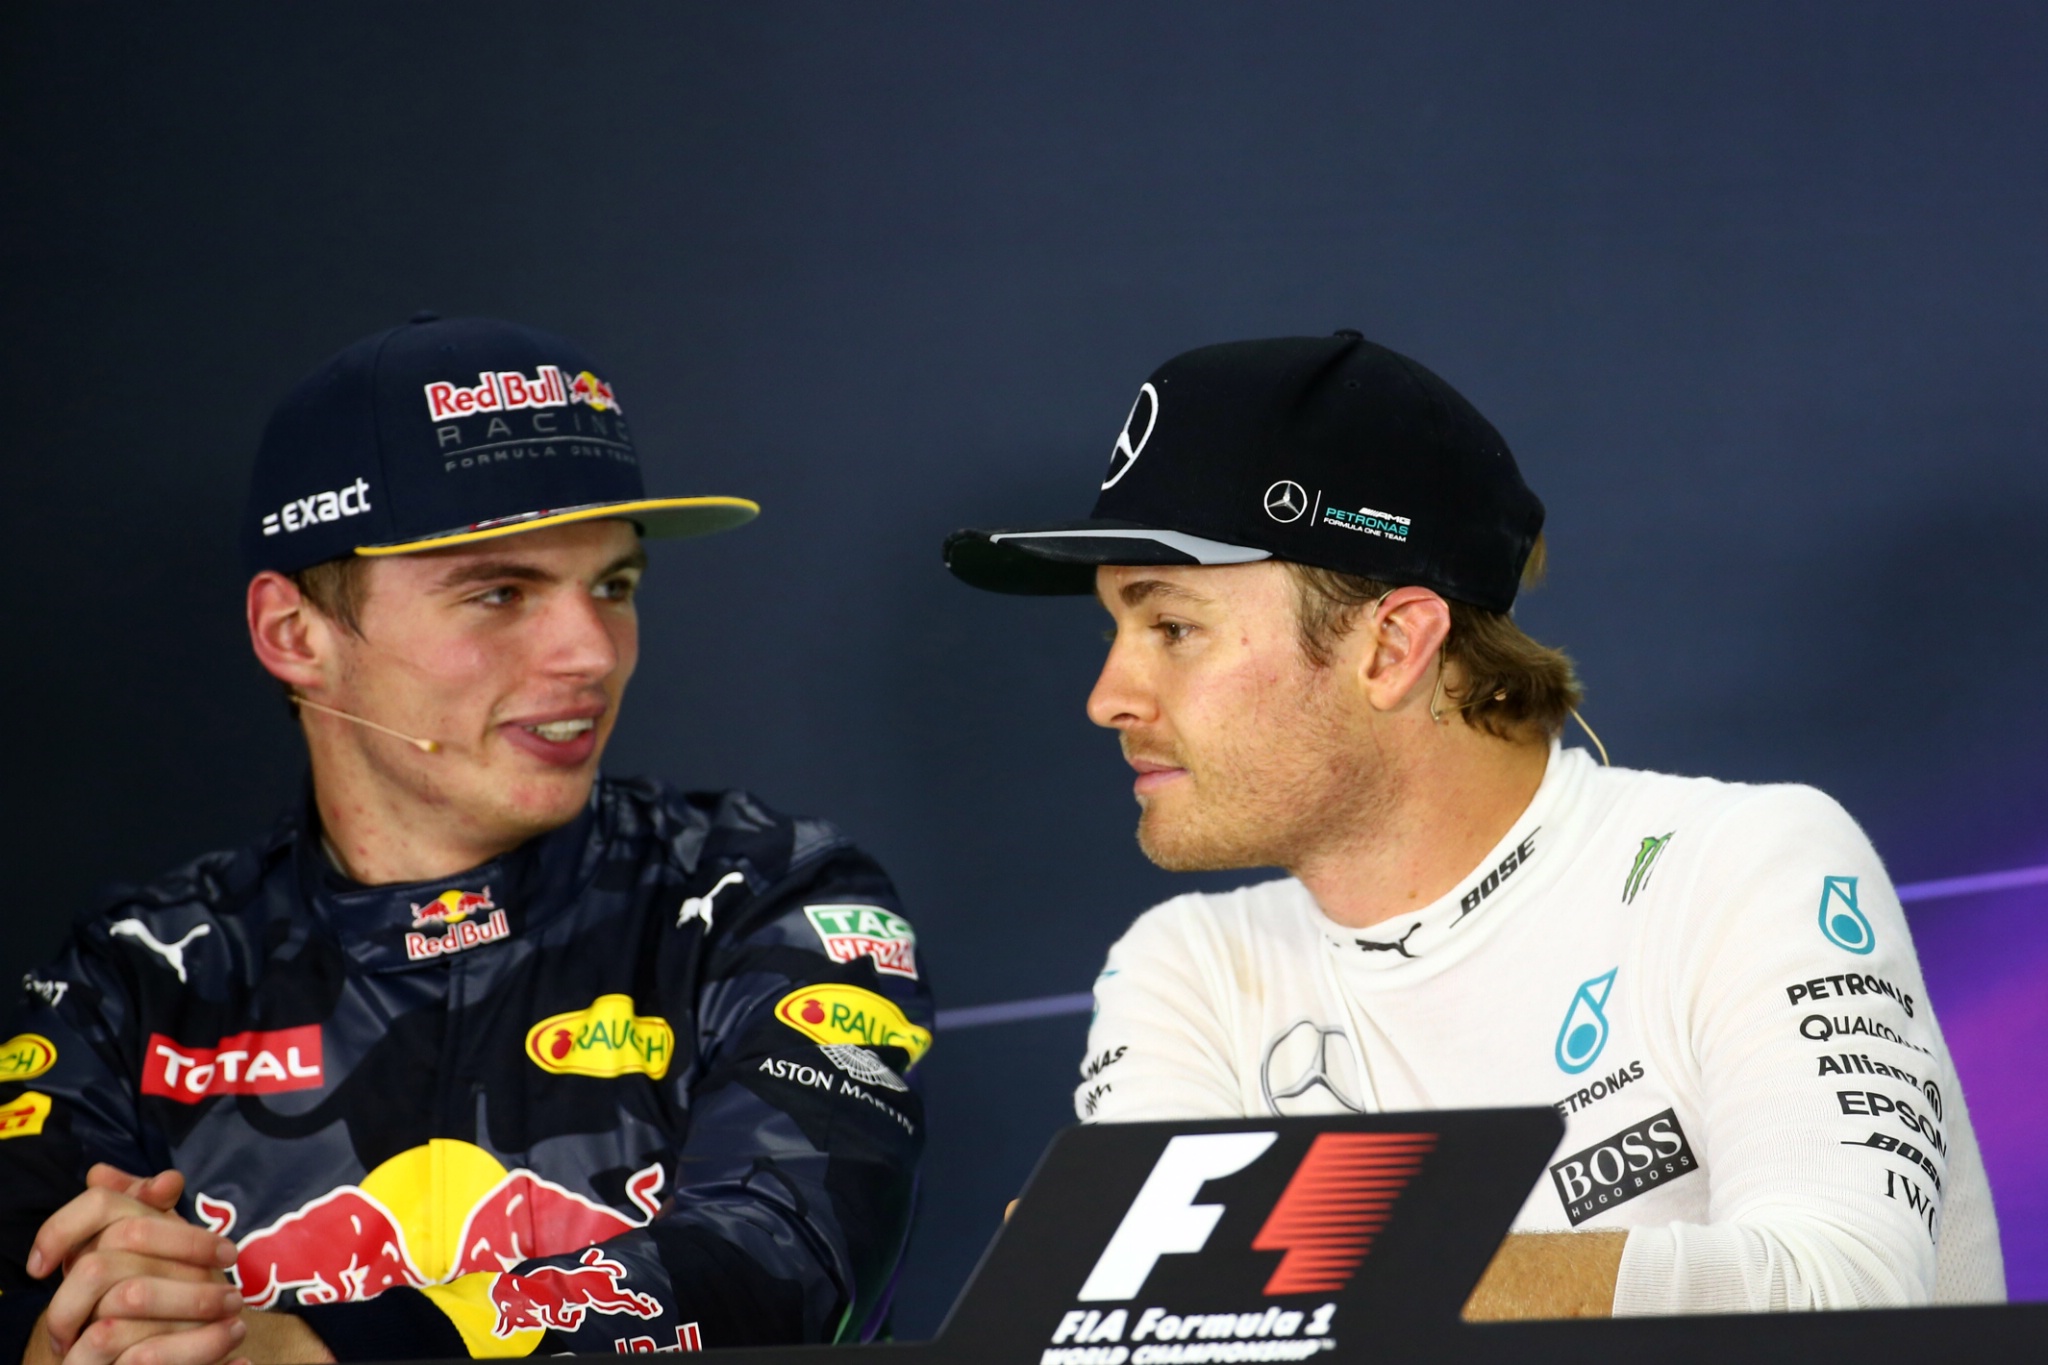  - Balap, Tekan konferensi, Max Verstappen (NED) Red Bull Racing RB12 dan Nico Rosberg (GER) Mercedes AMG F1 W07